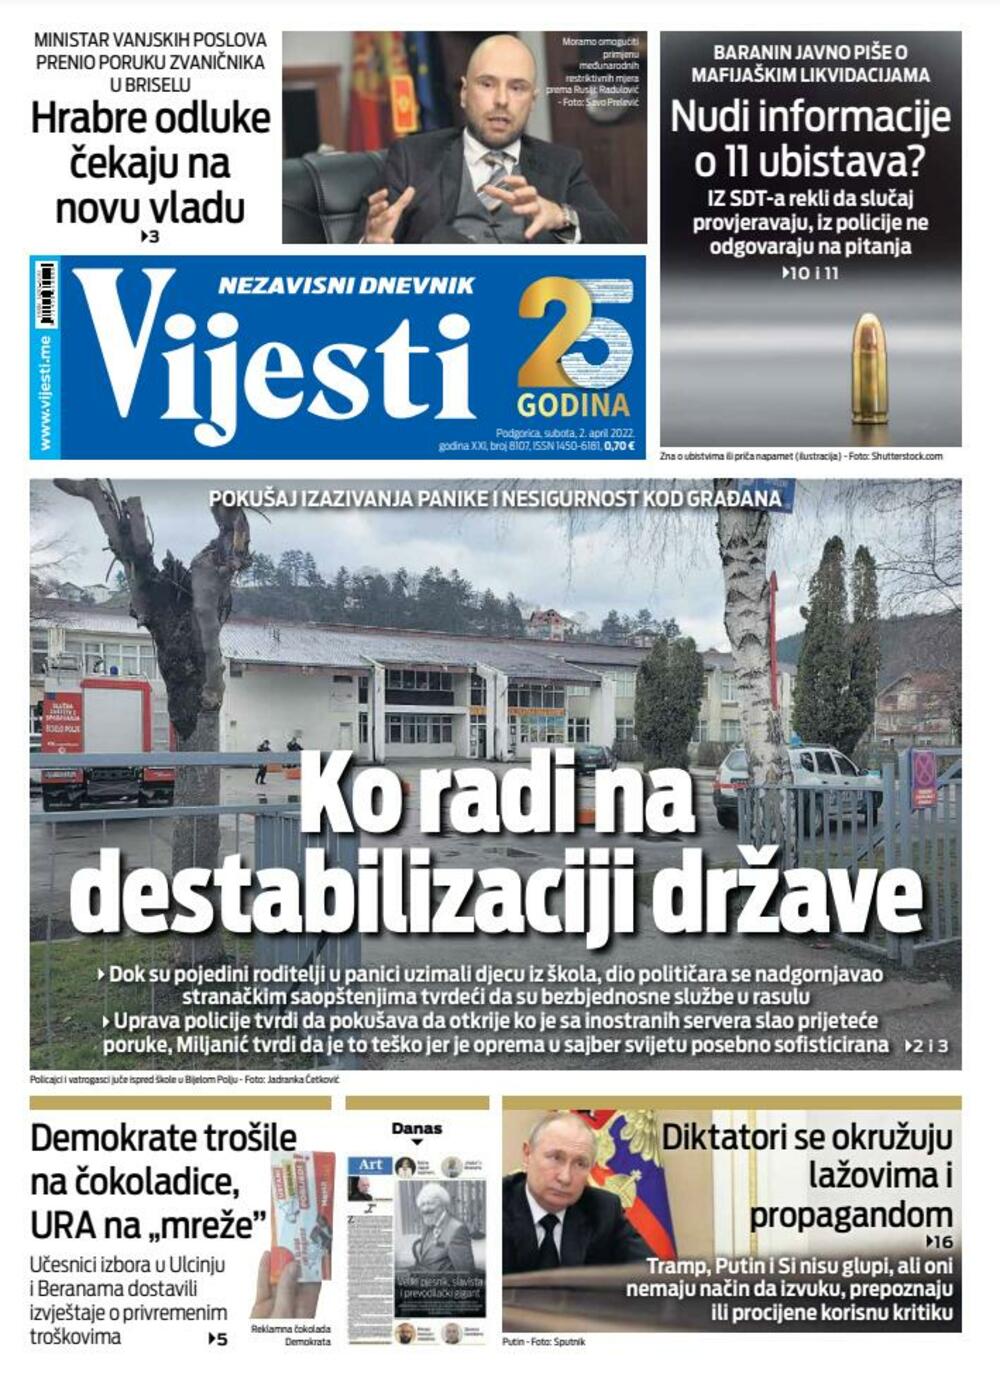 Naslovna strana Vijesti za 2. april 2022., Foto: Vijesti